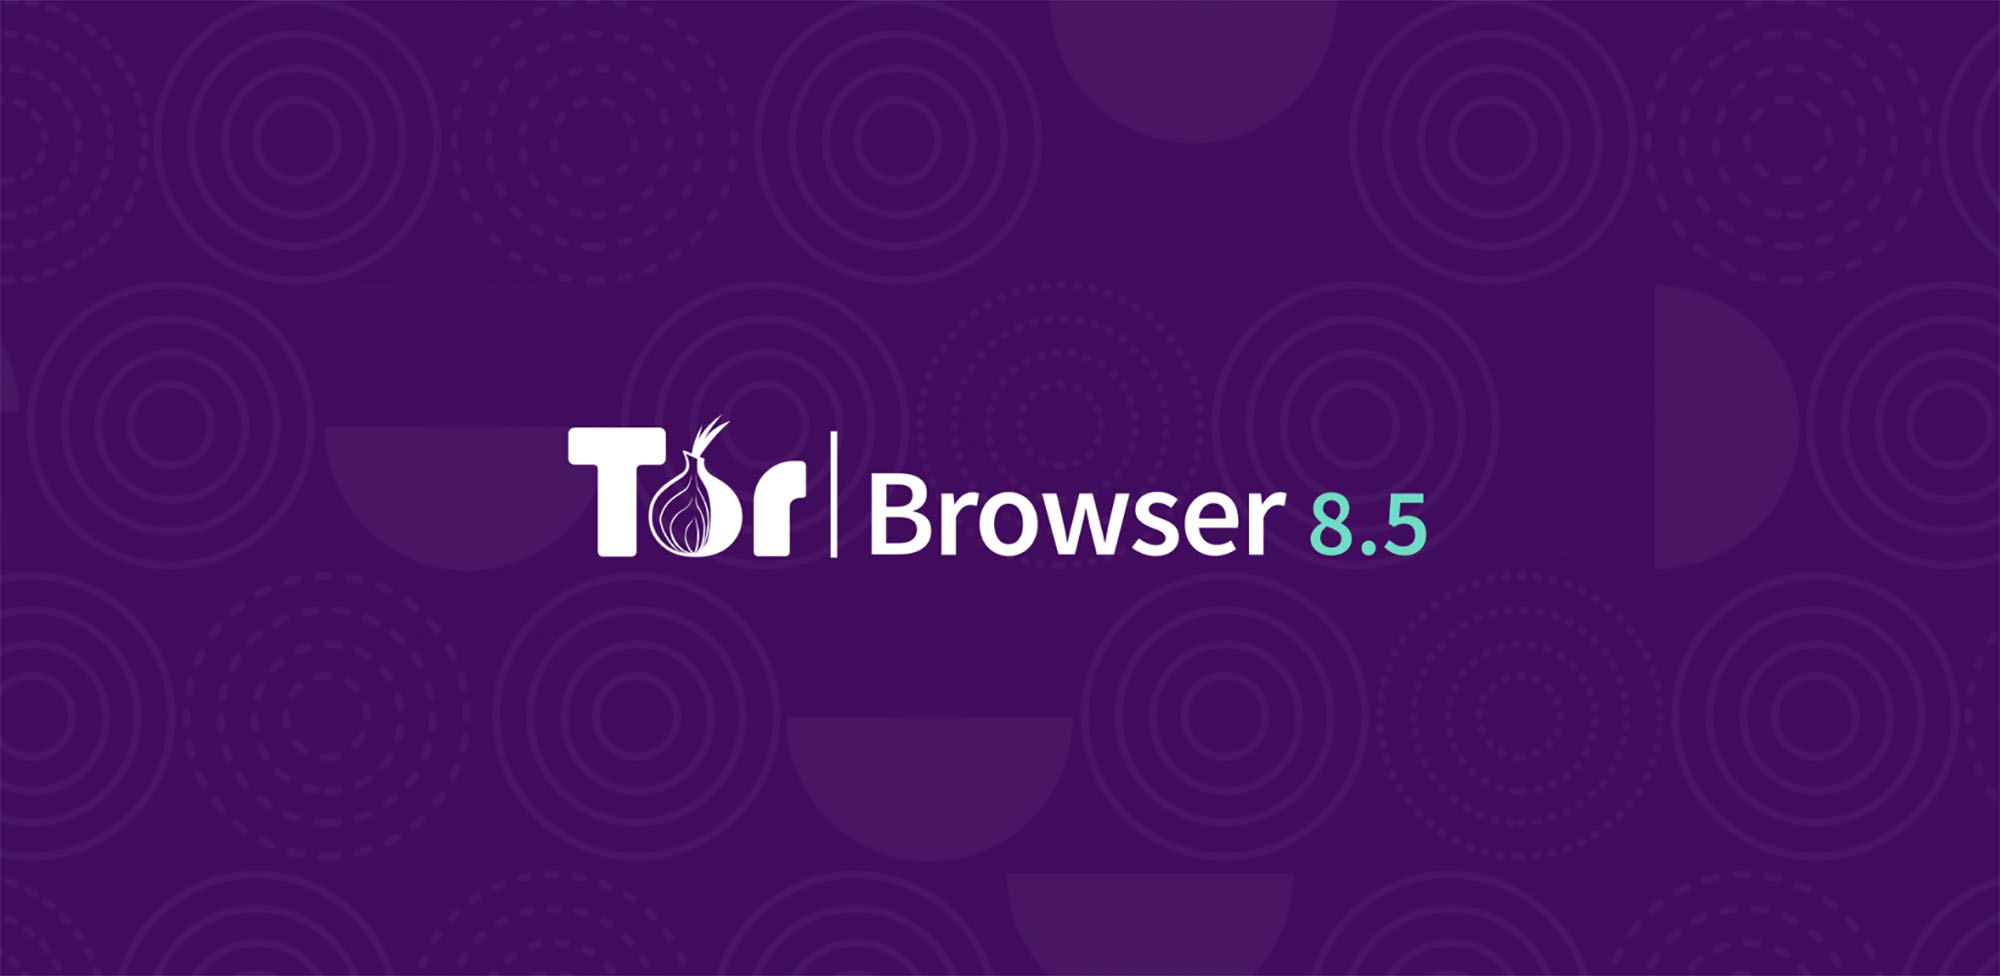 Tor browser for psp hidra какая морская соль купить